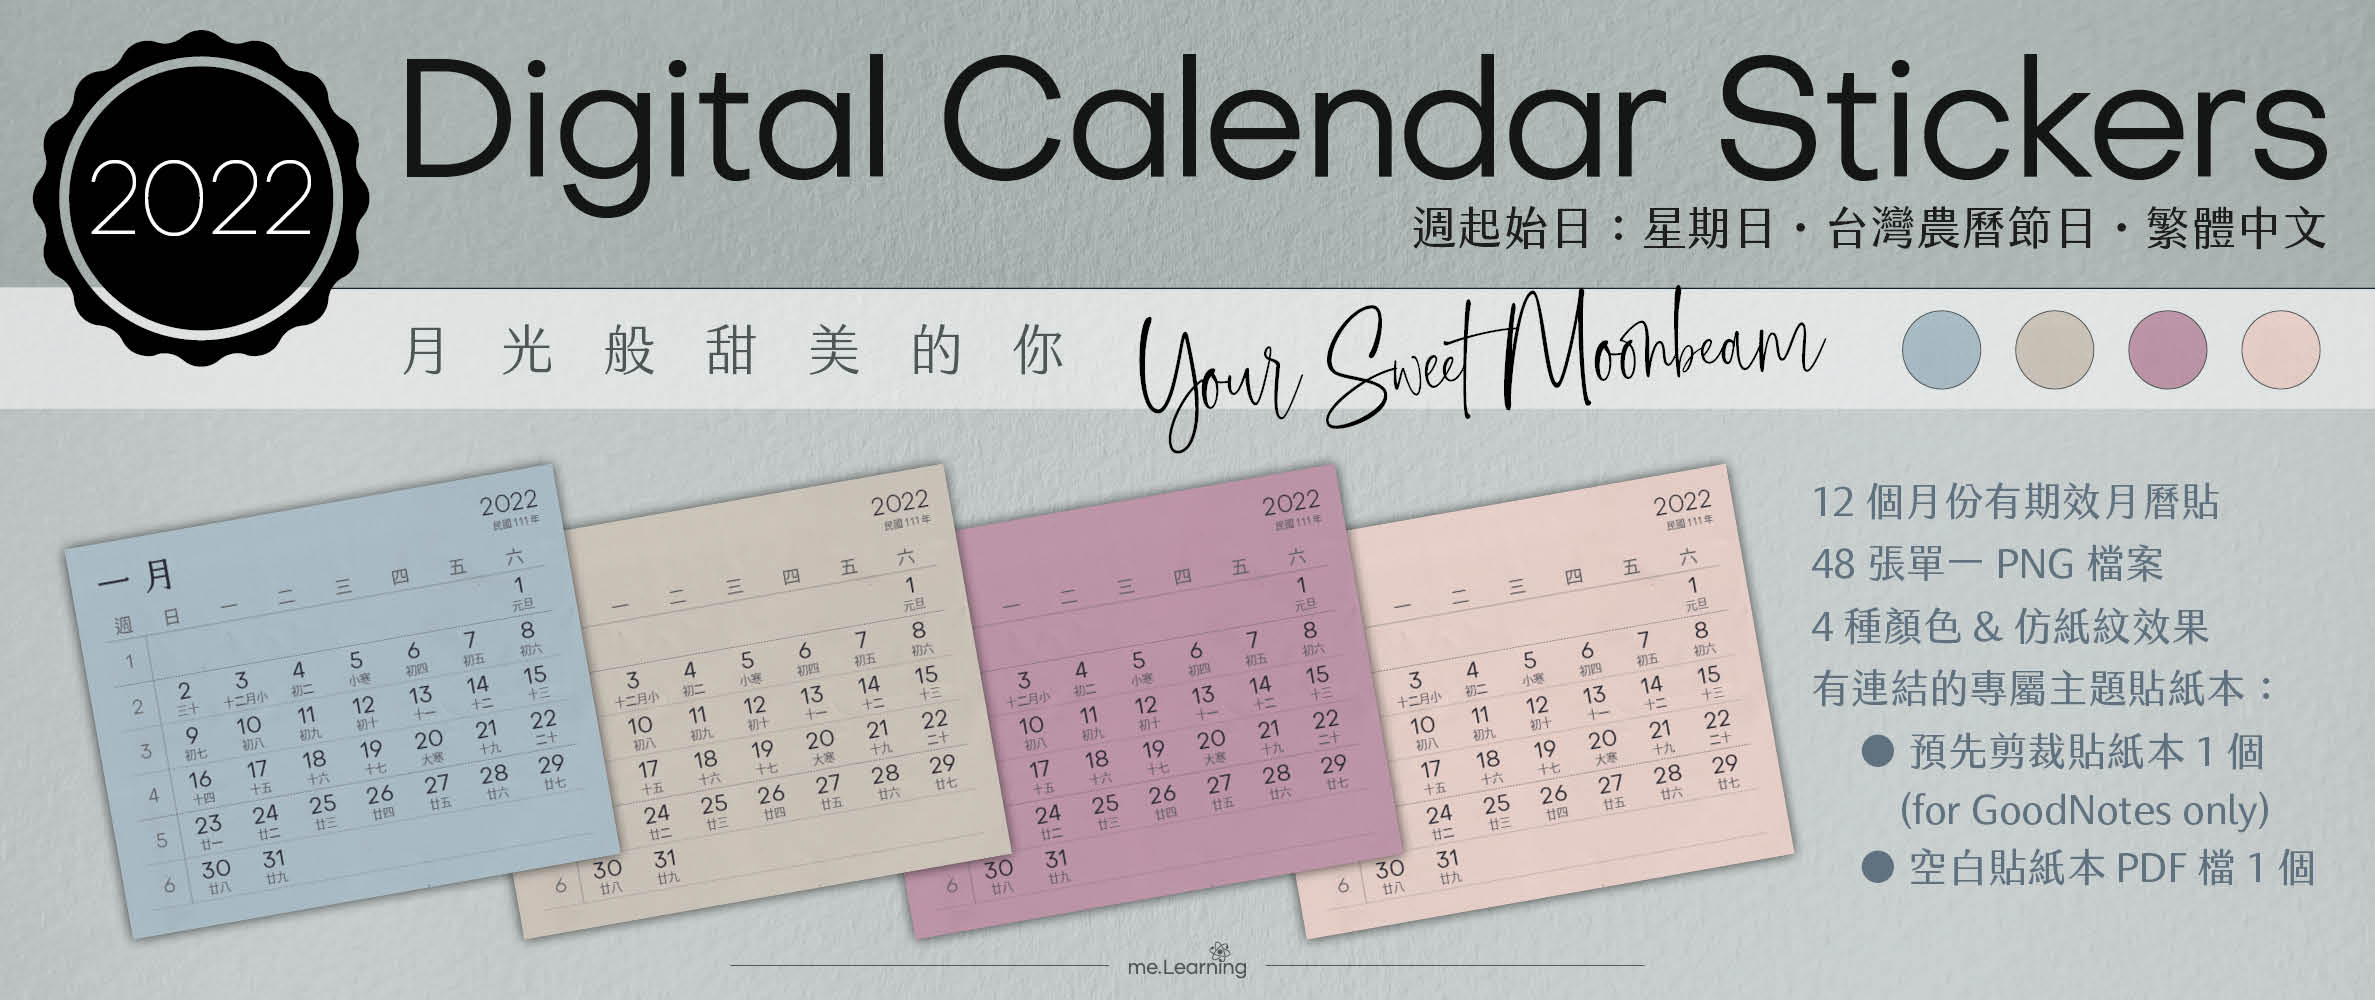 月曆貼-台灣繁中-2022年-月光般甜美的你-電子貼紙包Style001-農曆-Sunday start-CD0009